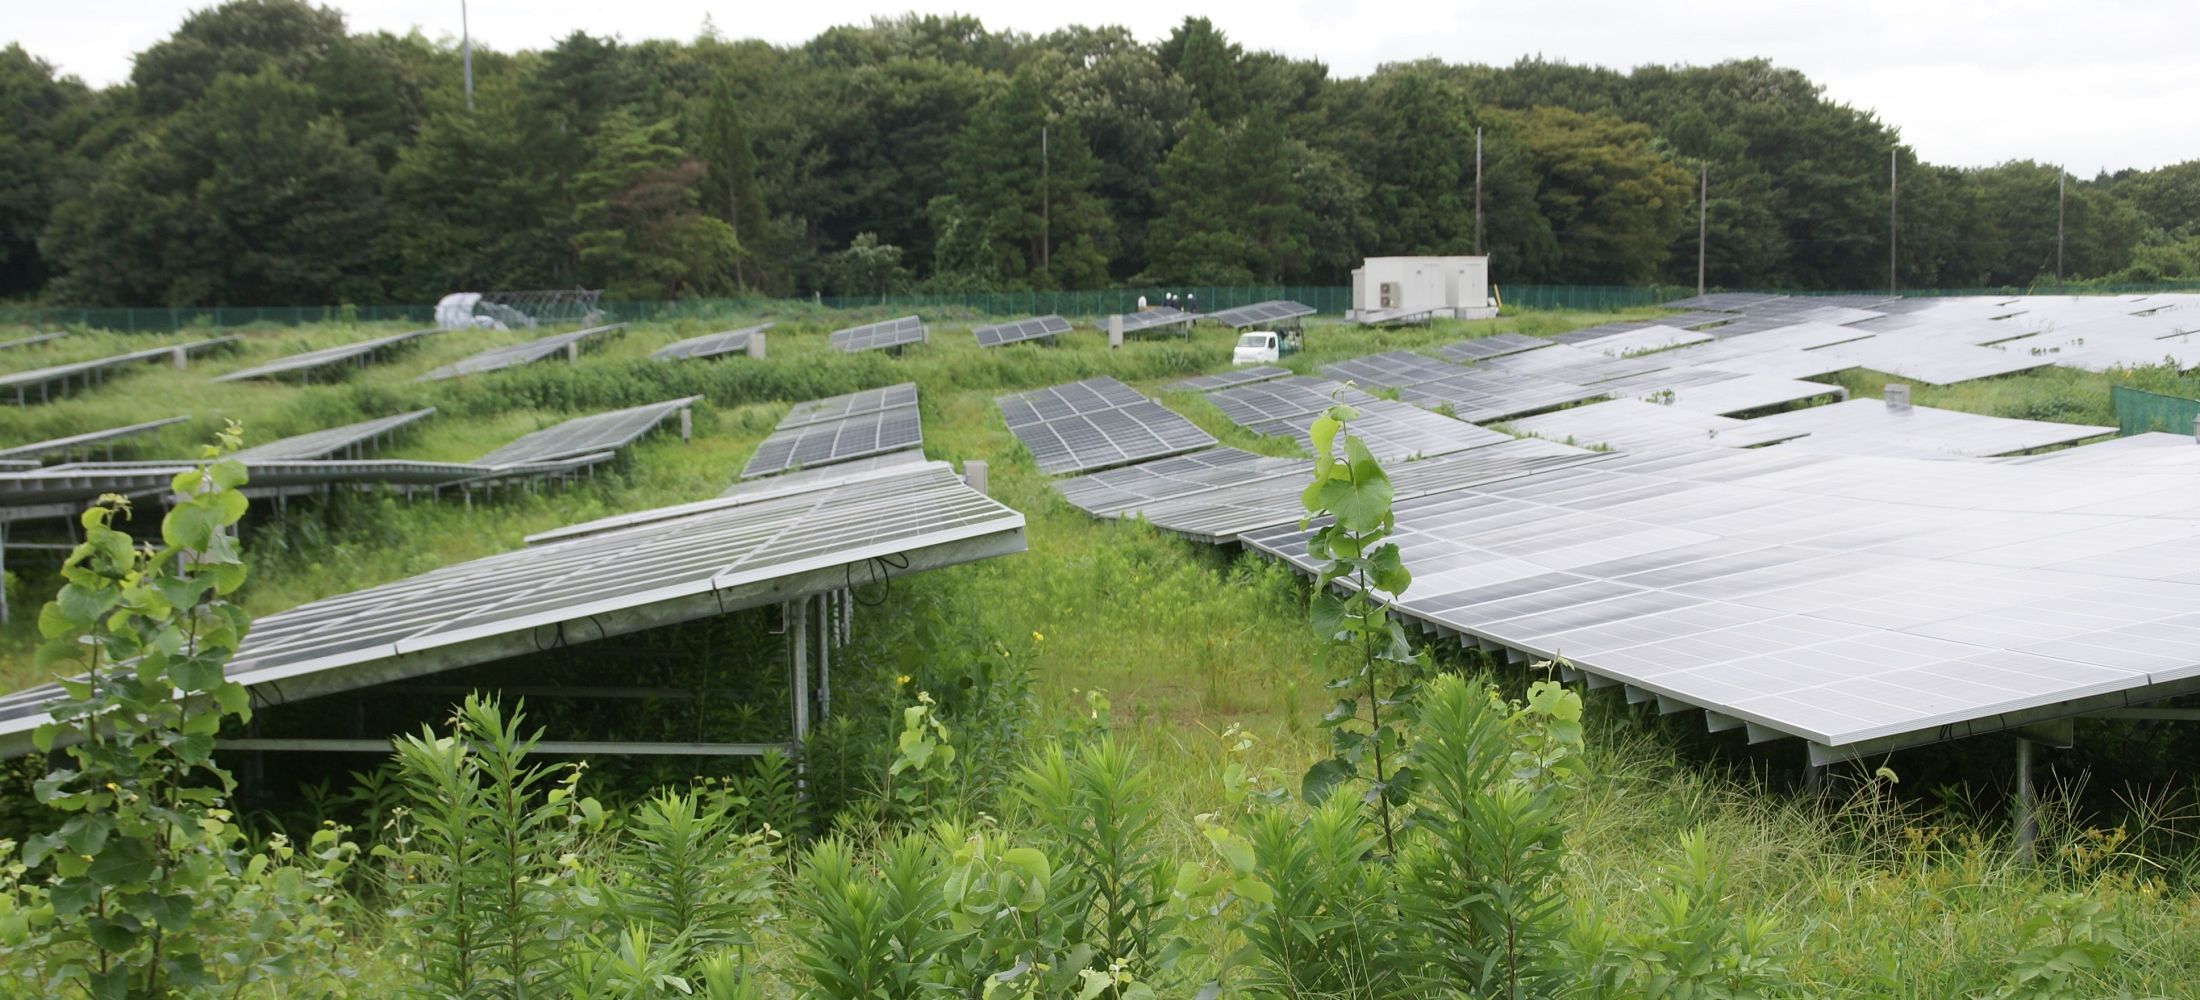 ソーラー発電施設における雑草対策